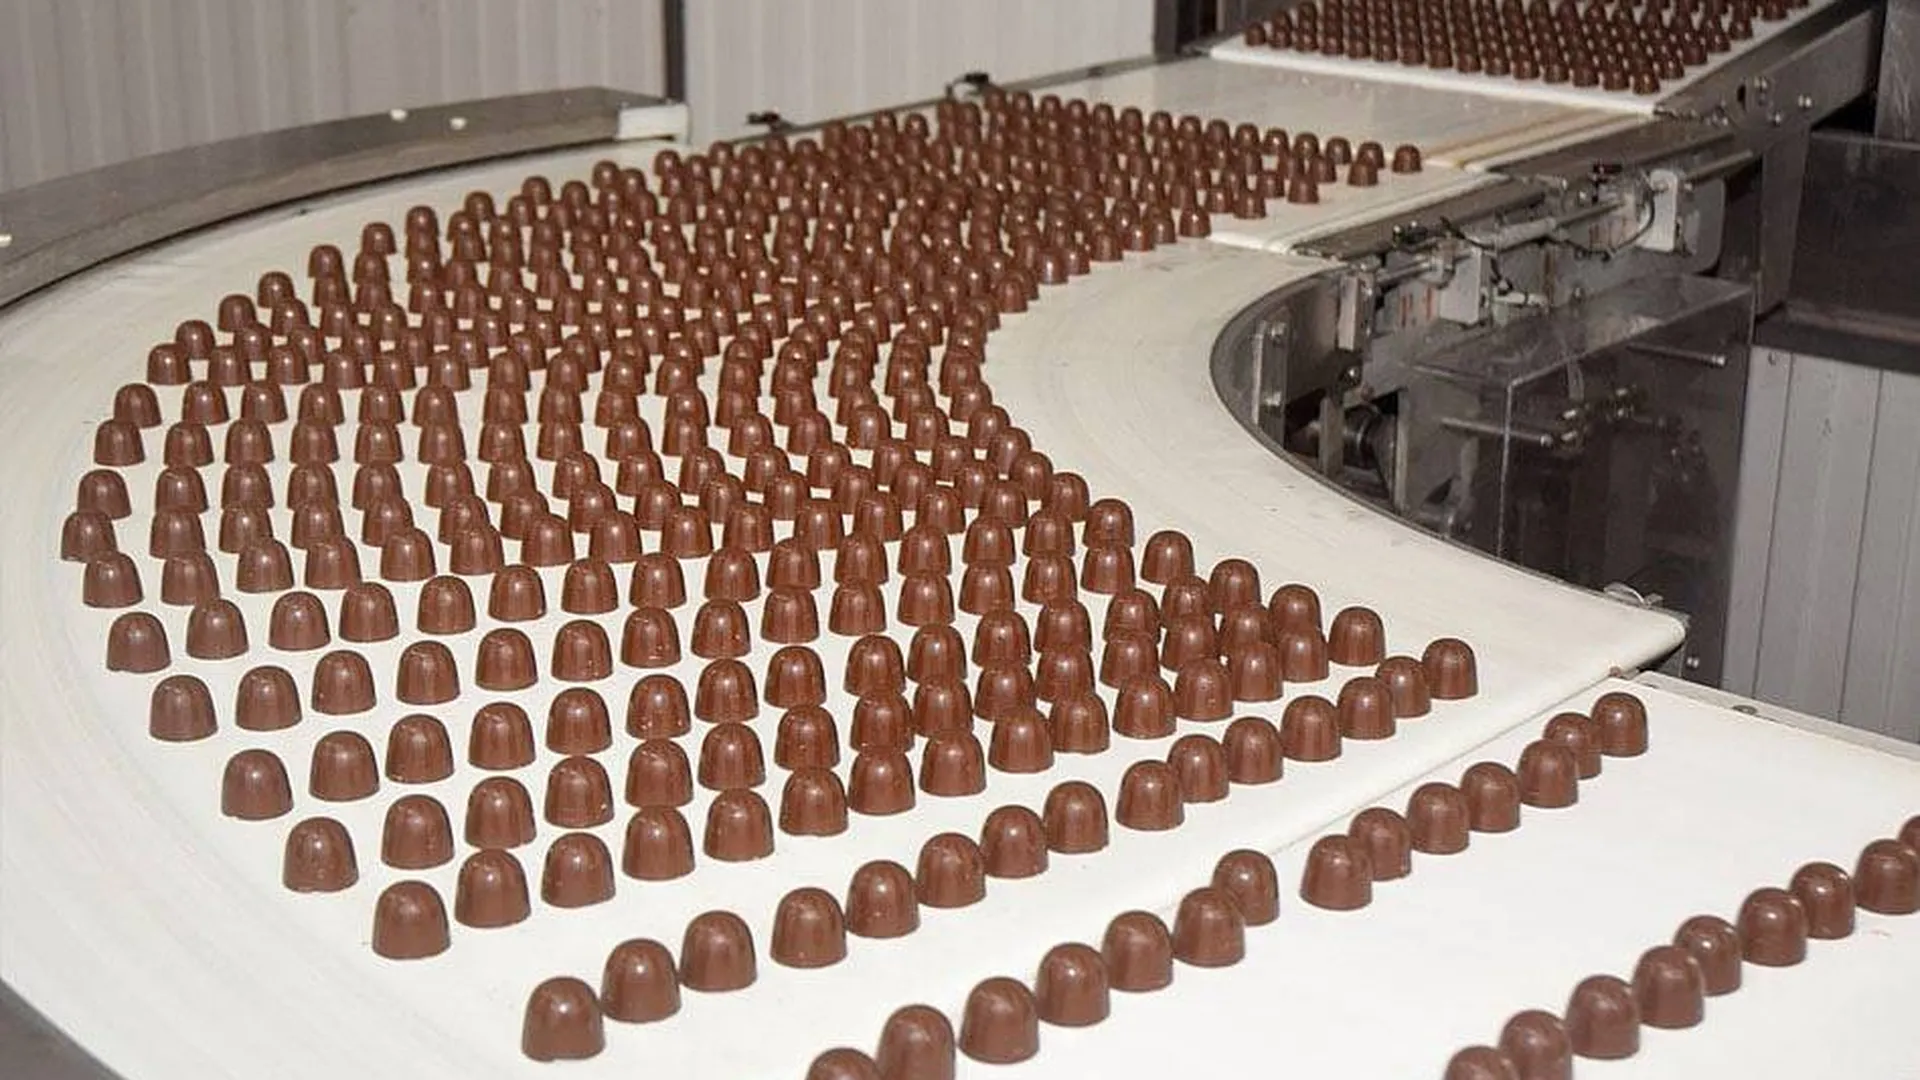 Можно шоколадную фабрику. Егорьевск шоколадная фабрика. Егорьевск шоколадная фабрика победа экскурсии. Фабрика шоколада экскурсия Егорьевск. Егорьевская кондитерская фабрика победа.